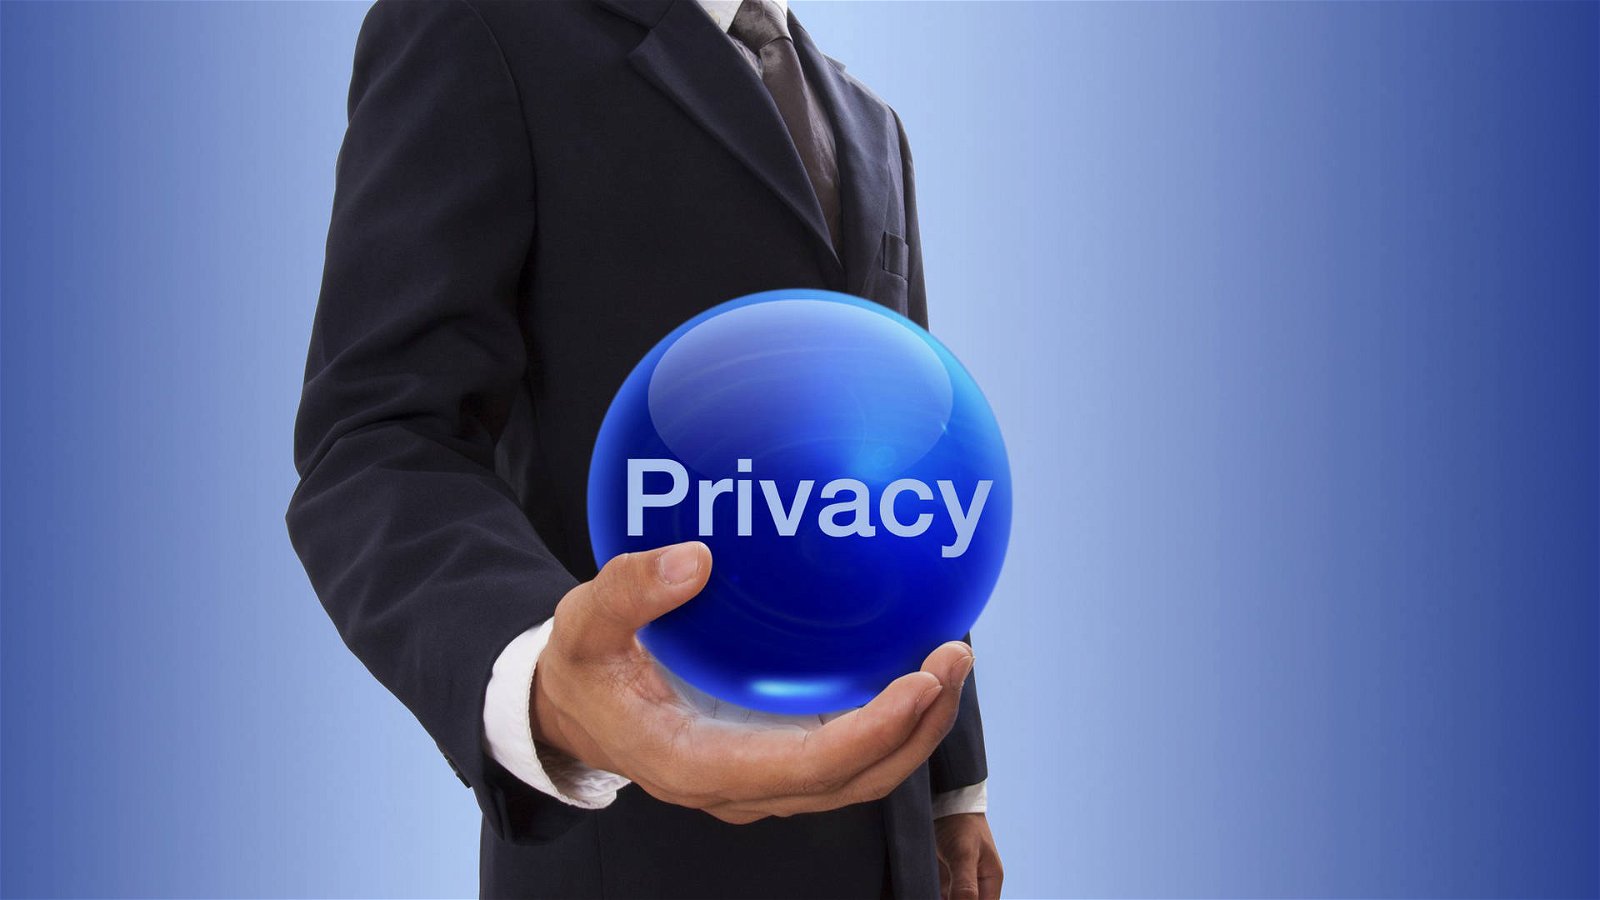 Immagine di Fattura elettronica: rischi per la protezione dei dati personali